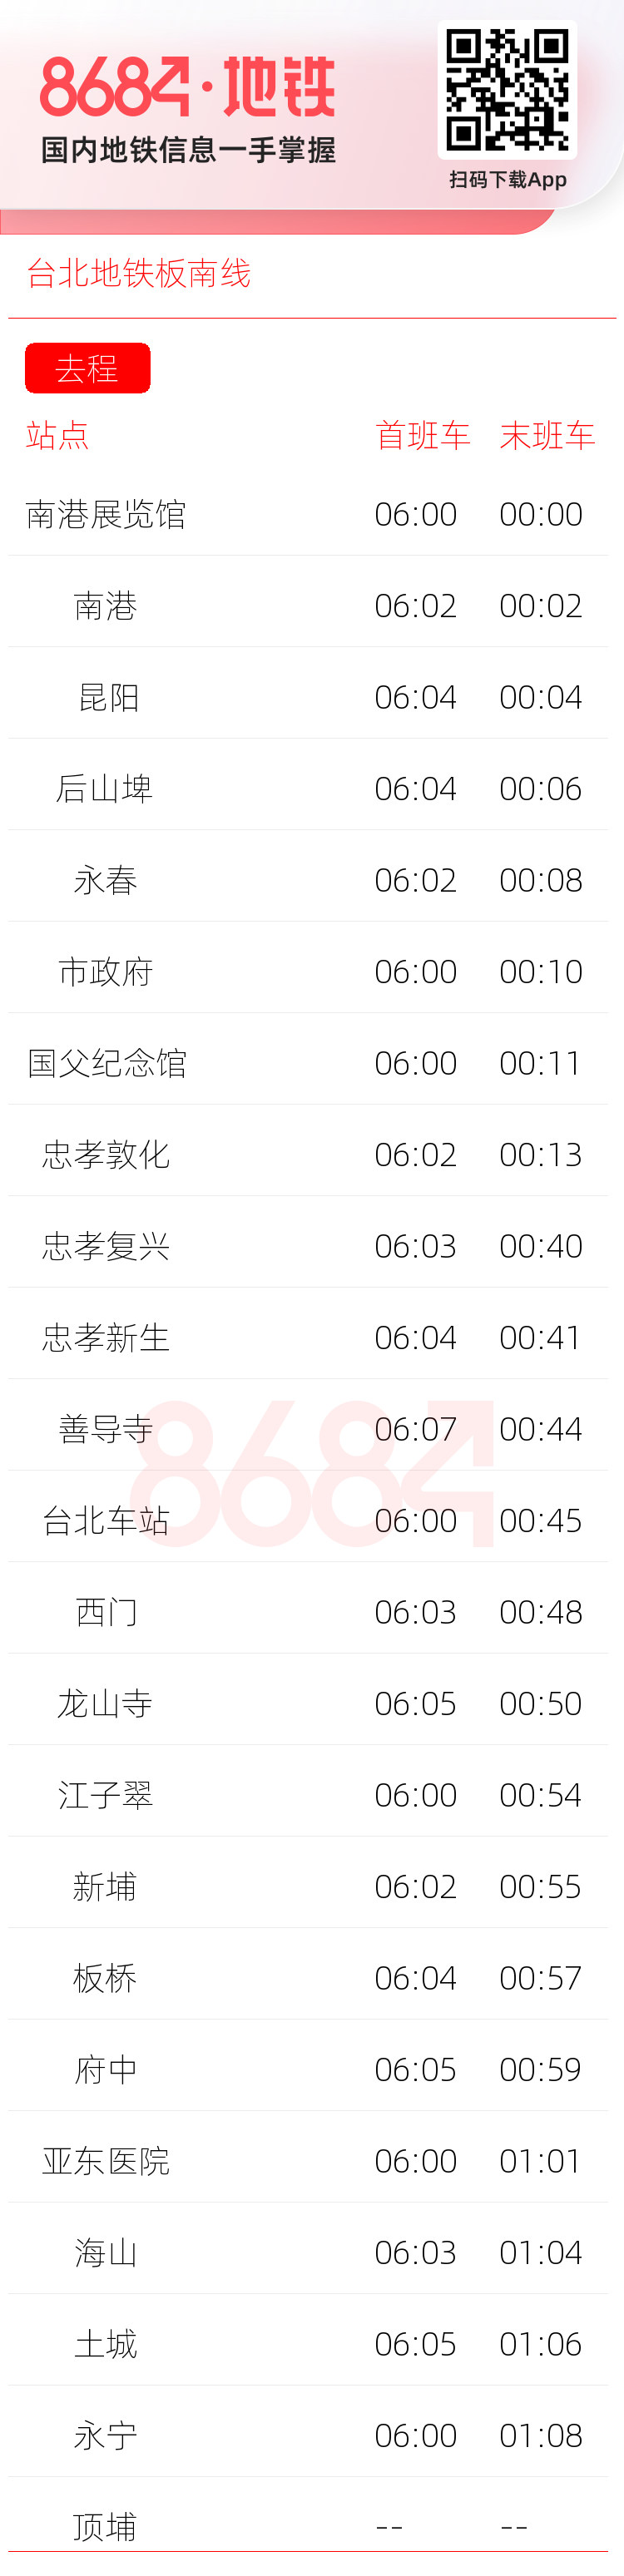 台北地铁板南线运营时间表